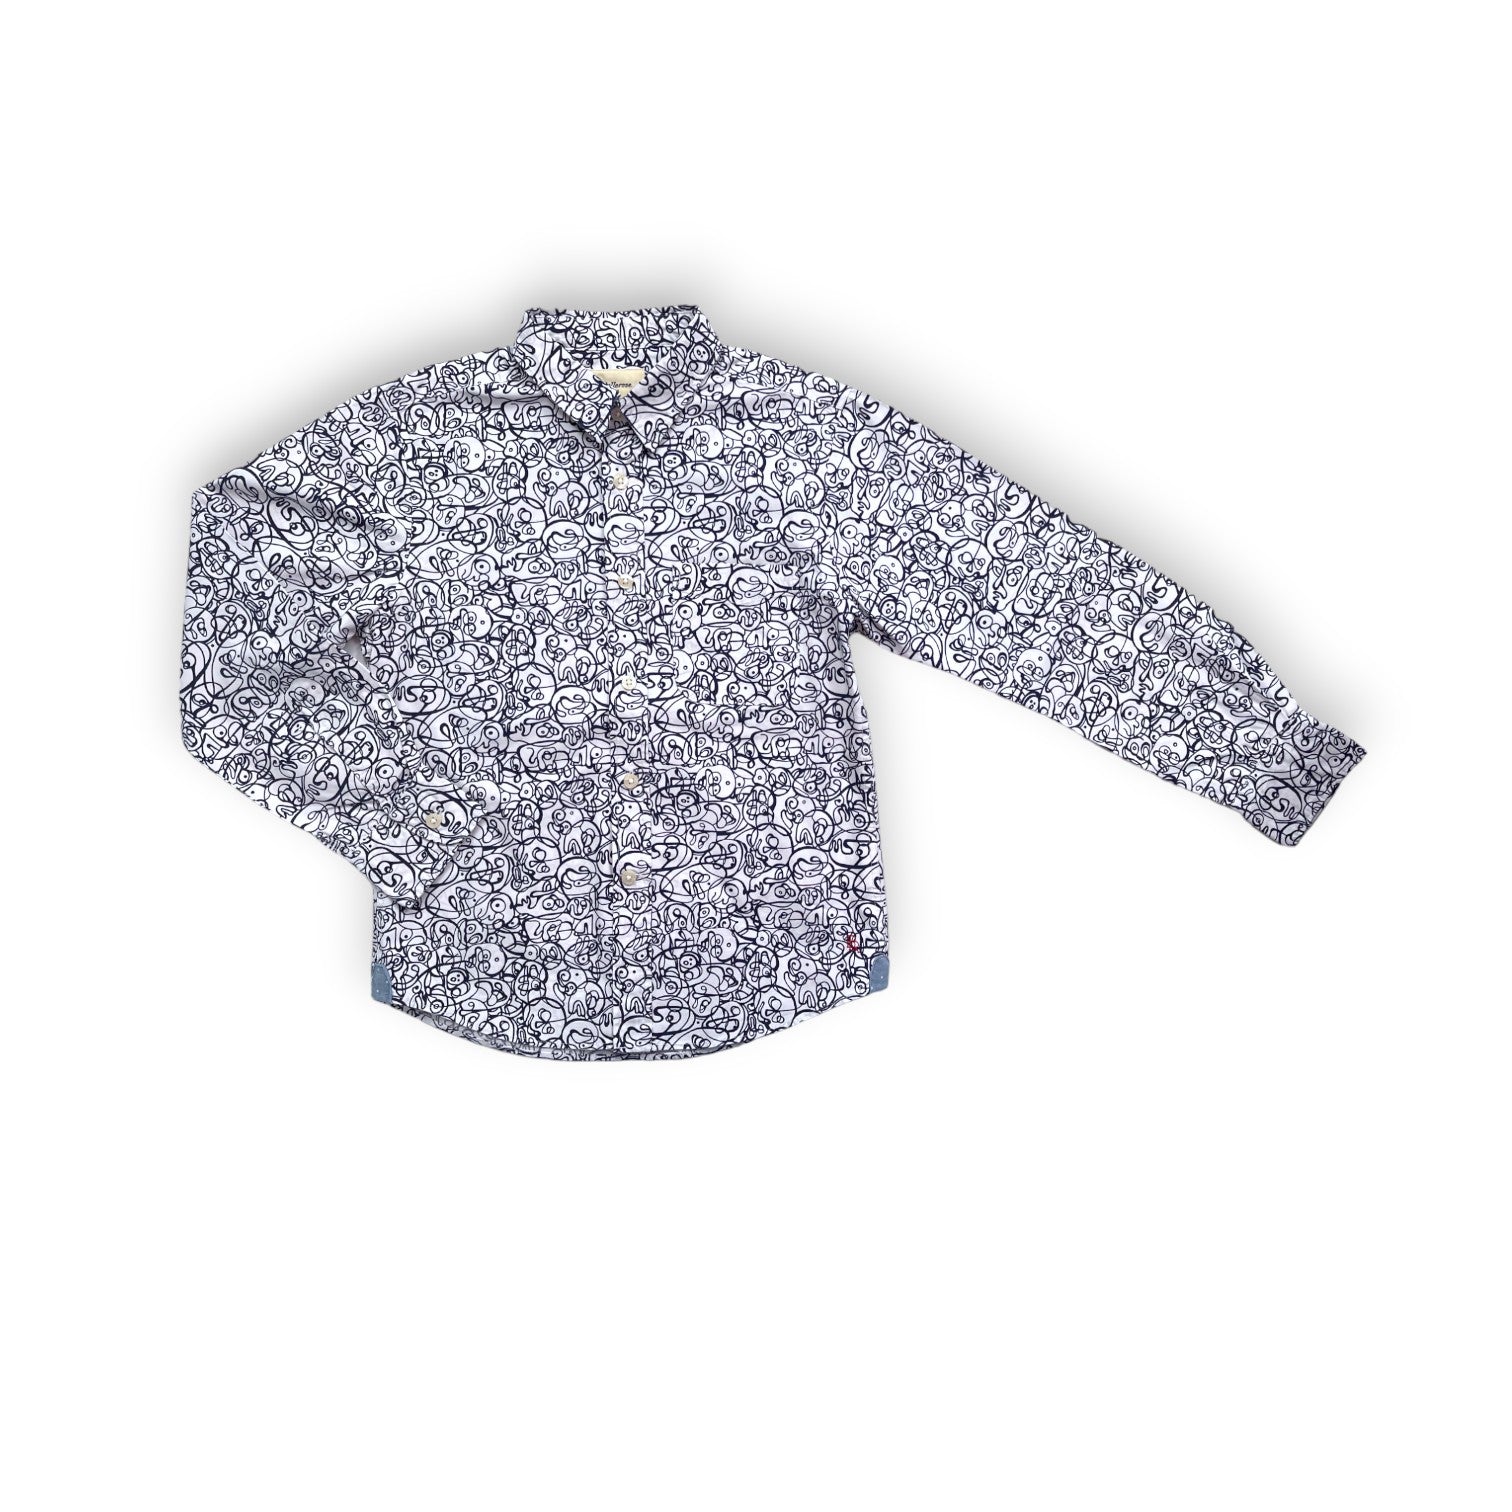 BELLEROSE - Chemise blanche à motifs abstraits bleus - 8 ans